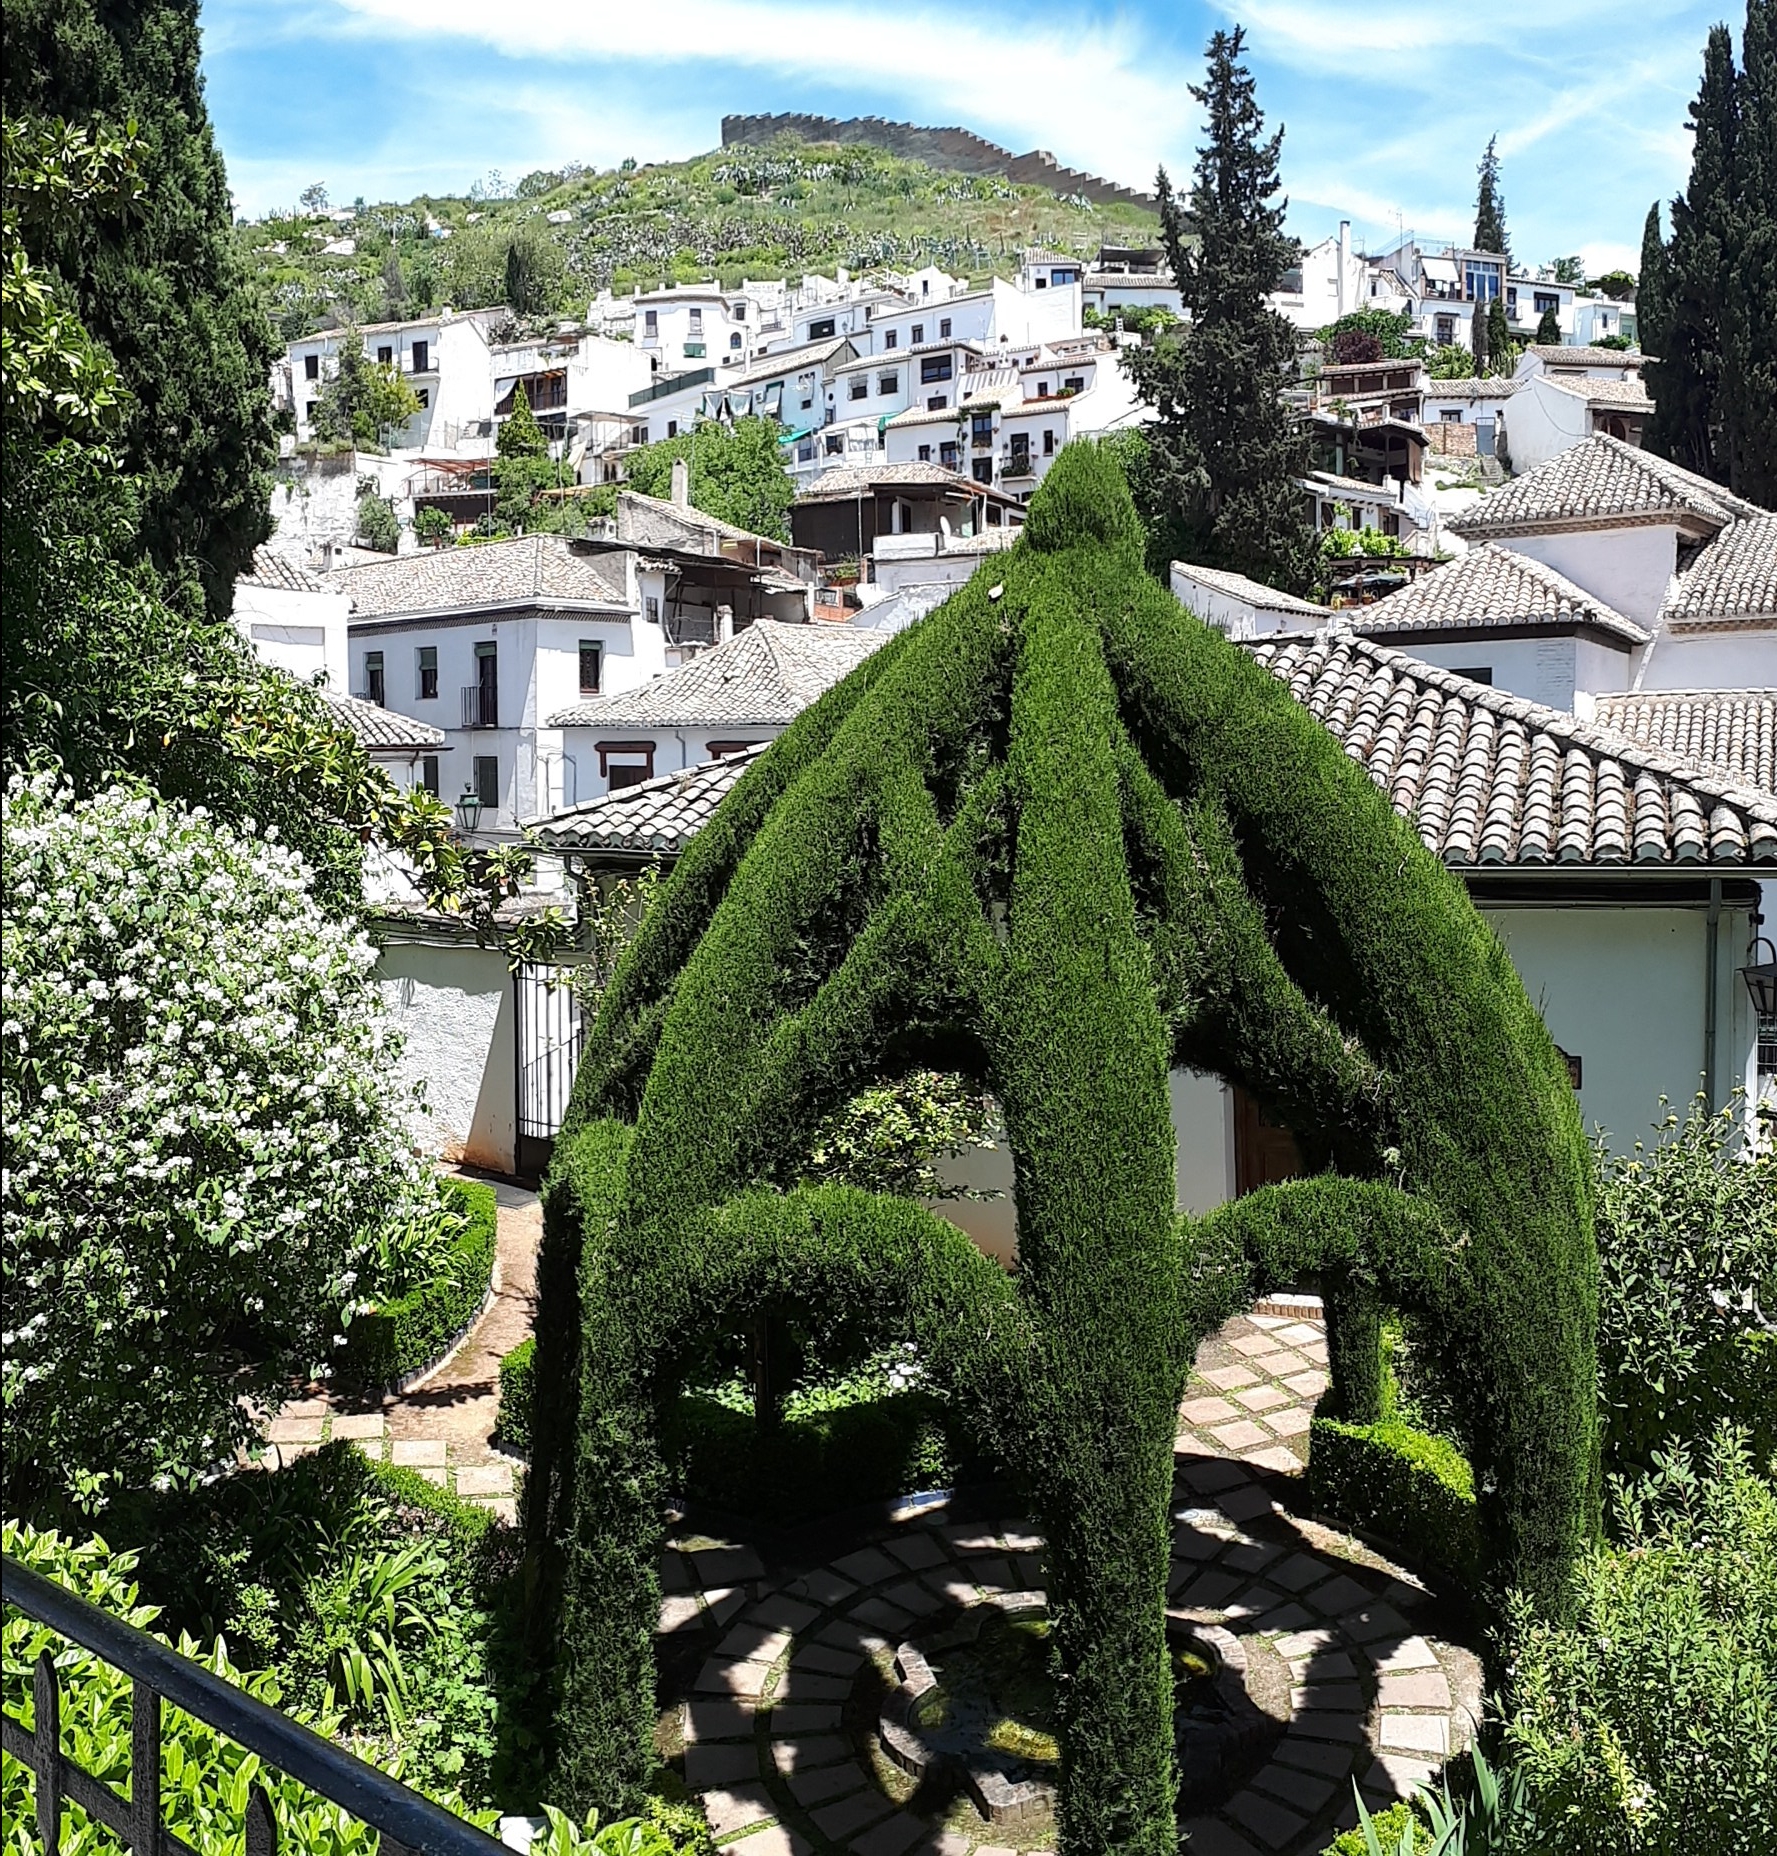 Patio de un cármen que dispone de unas bonitas vistas a la ciudad de Granada.